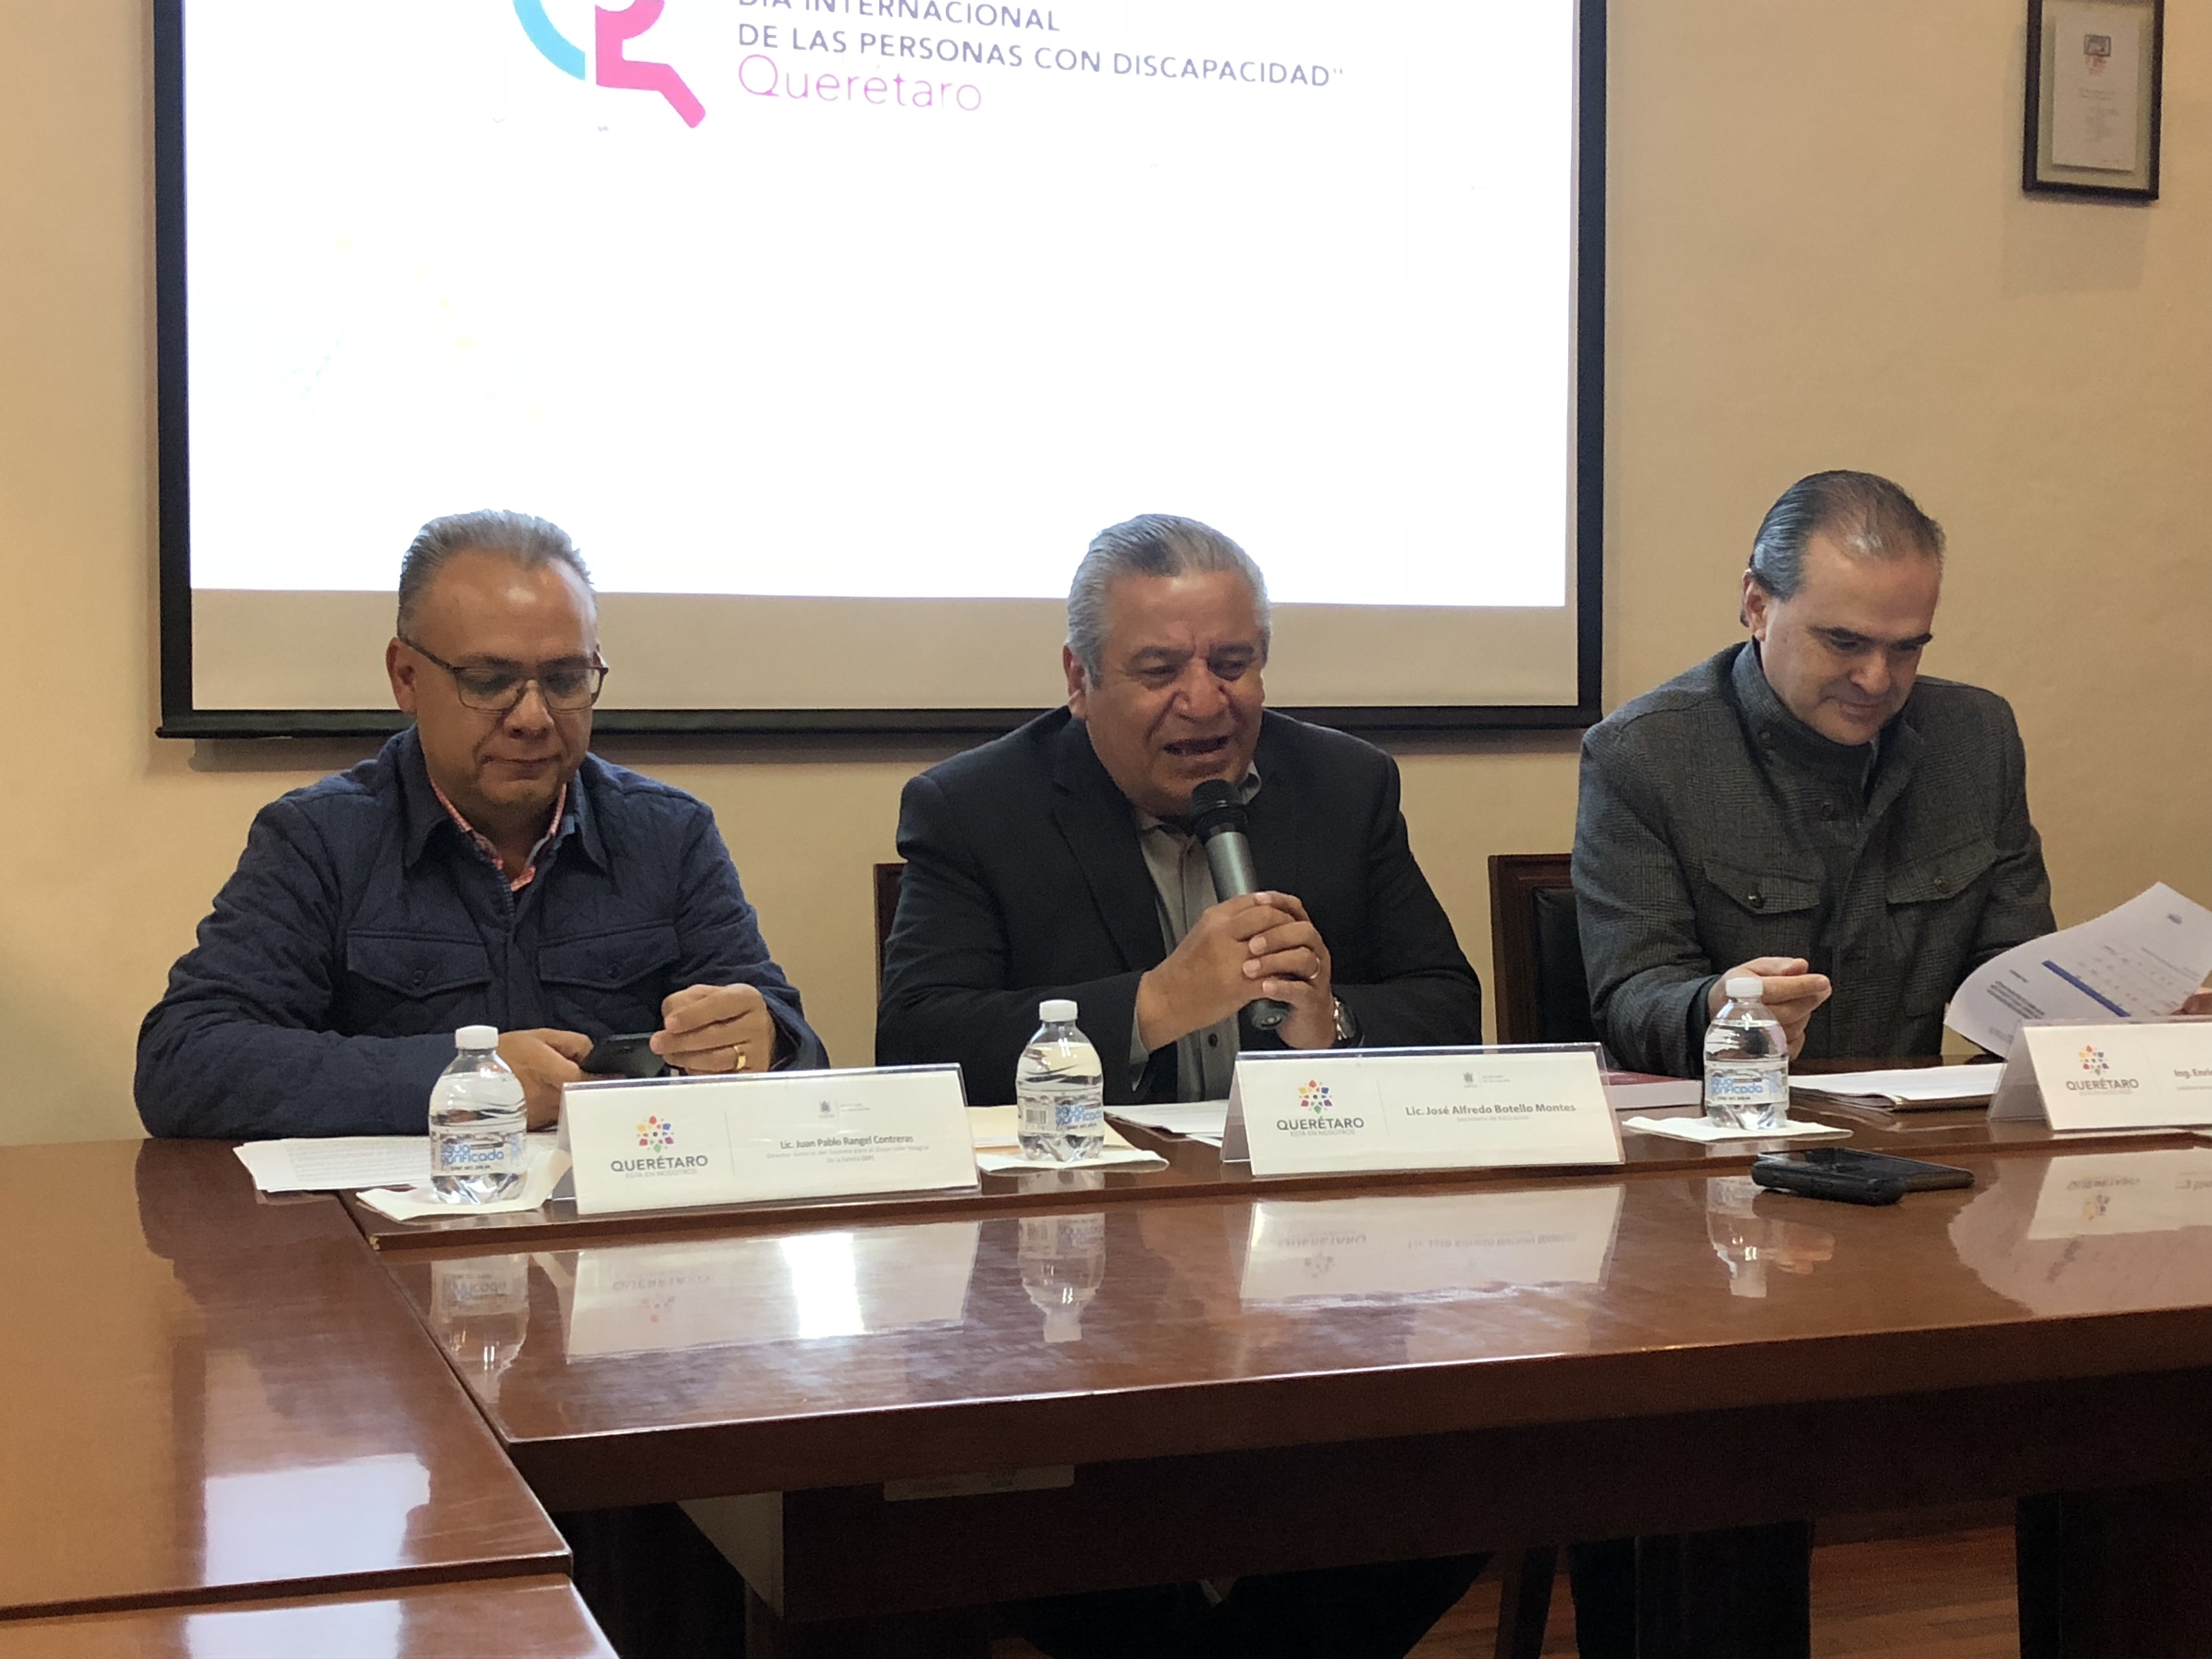  Buscan potenciar inclusión de personas con discapacidad en sistema educativo de Querétaro